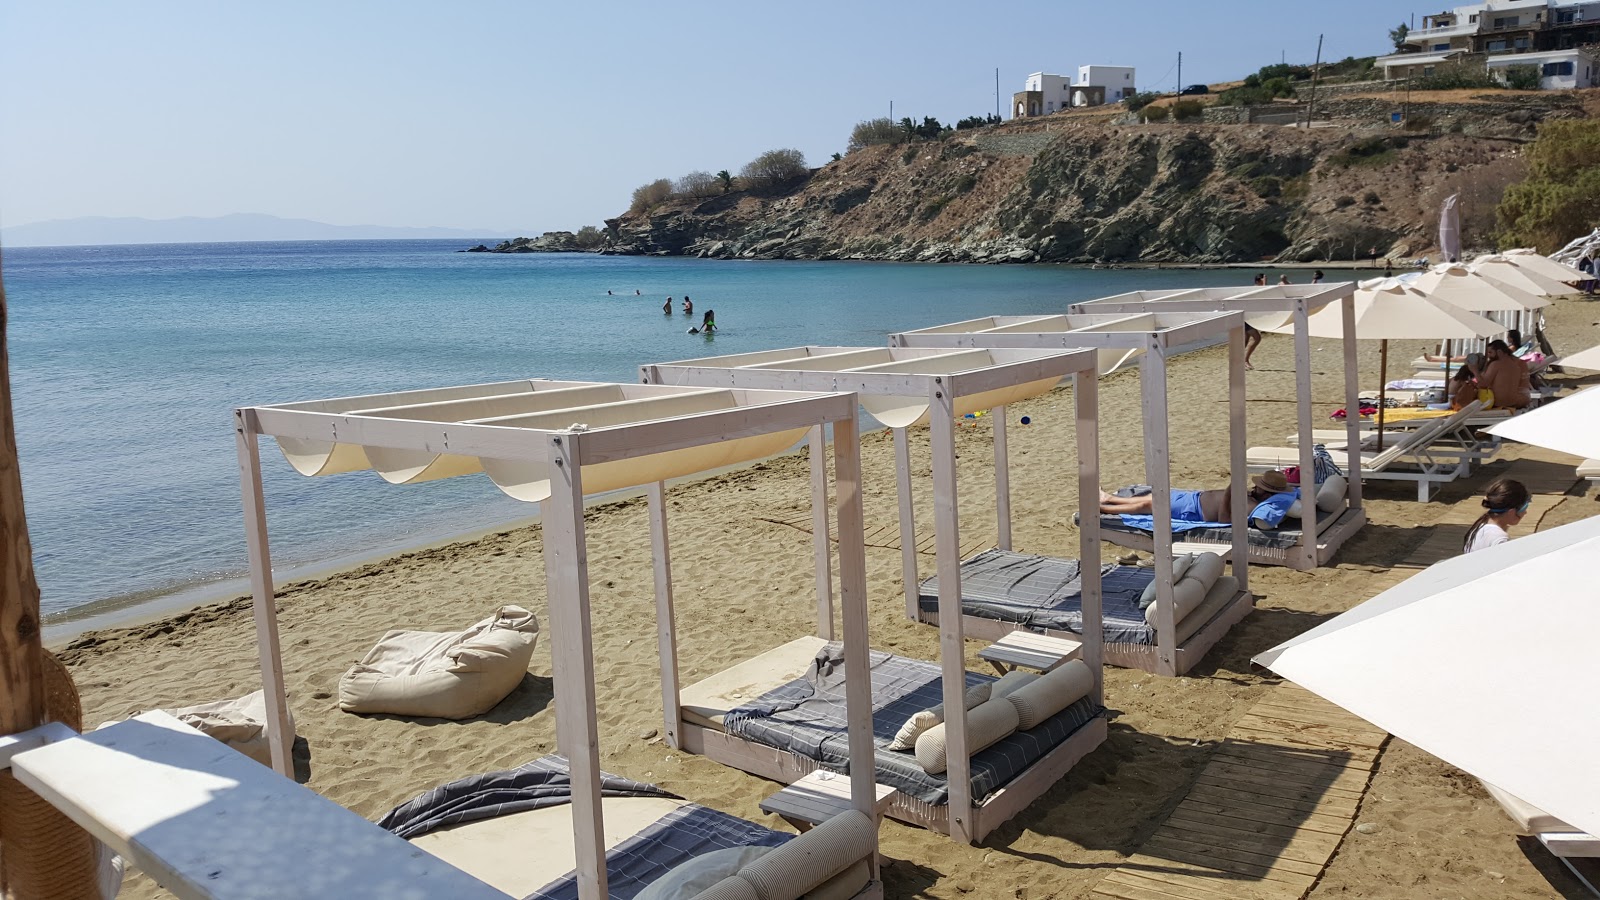 Foto af Agios Romanos Strand - populært sted blandt afslapningskendere